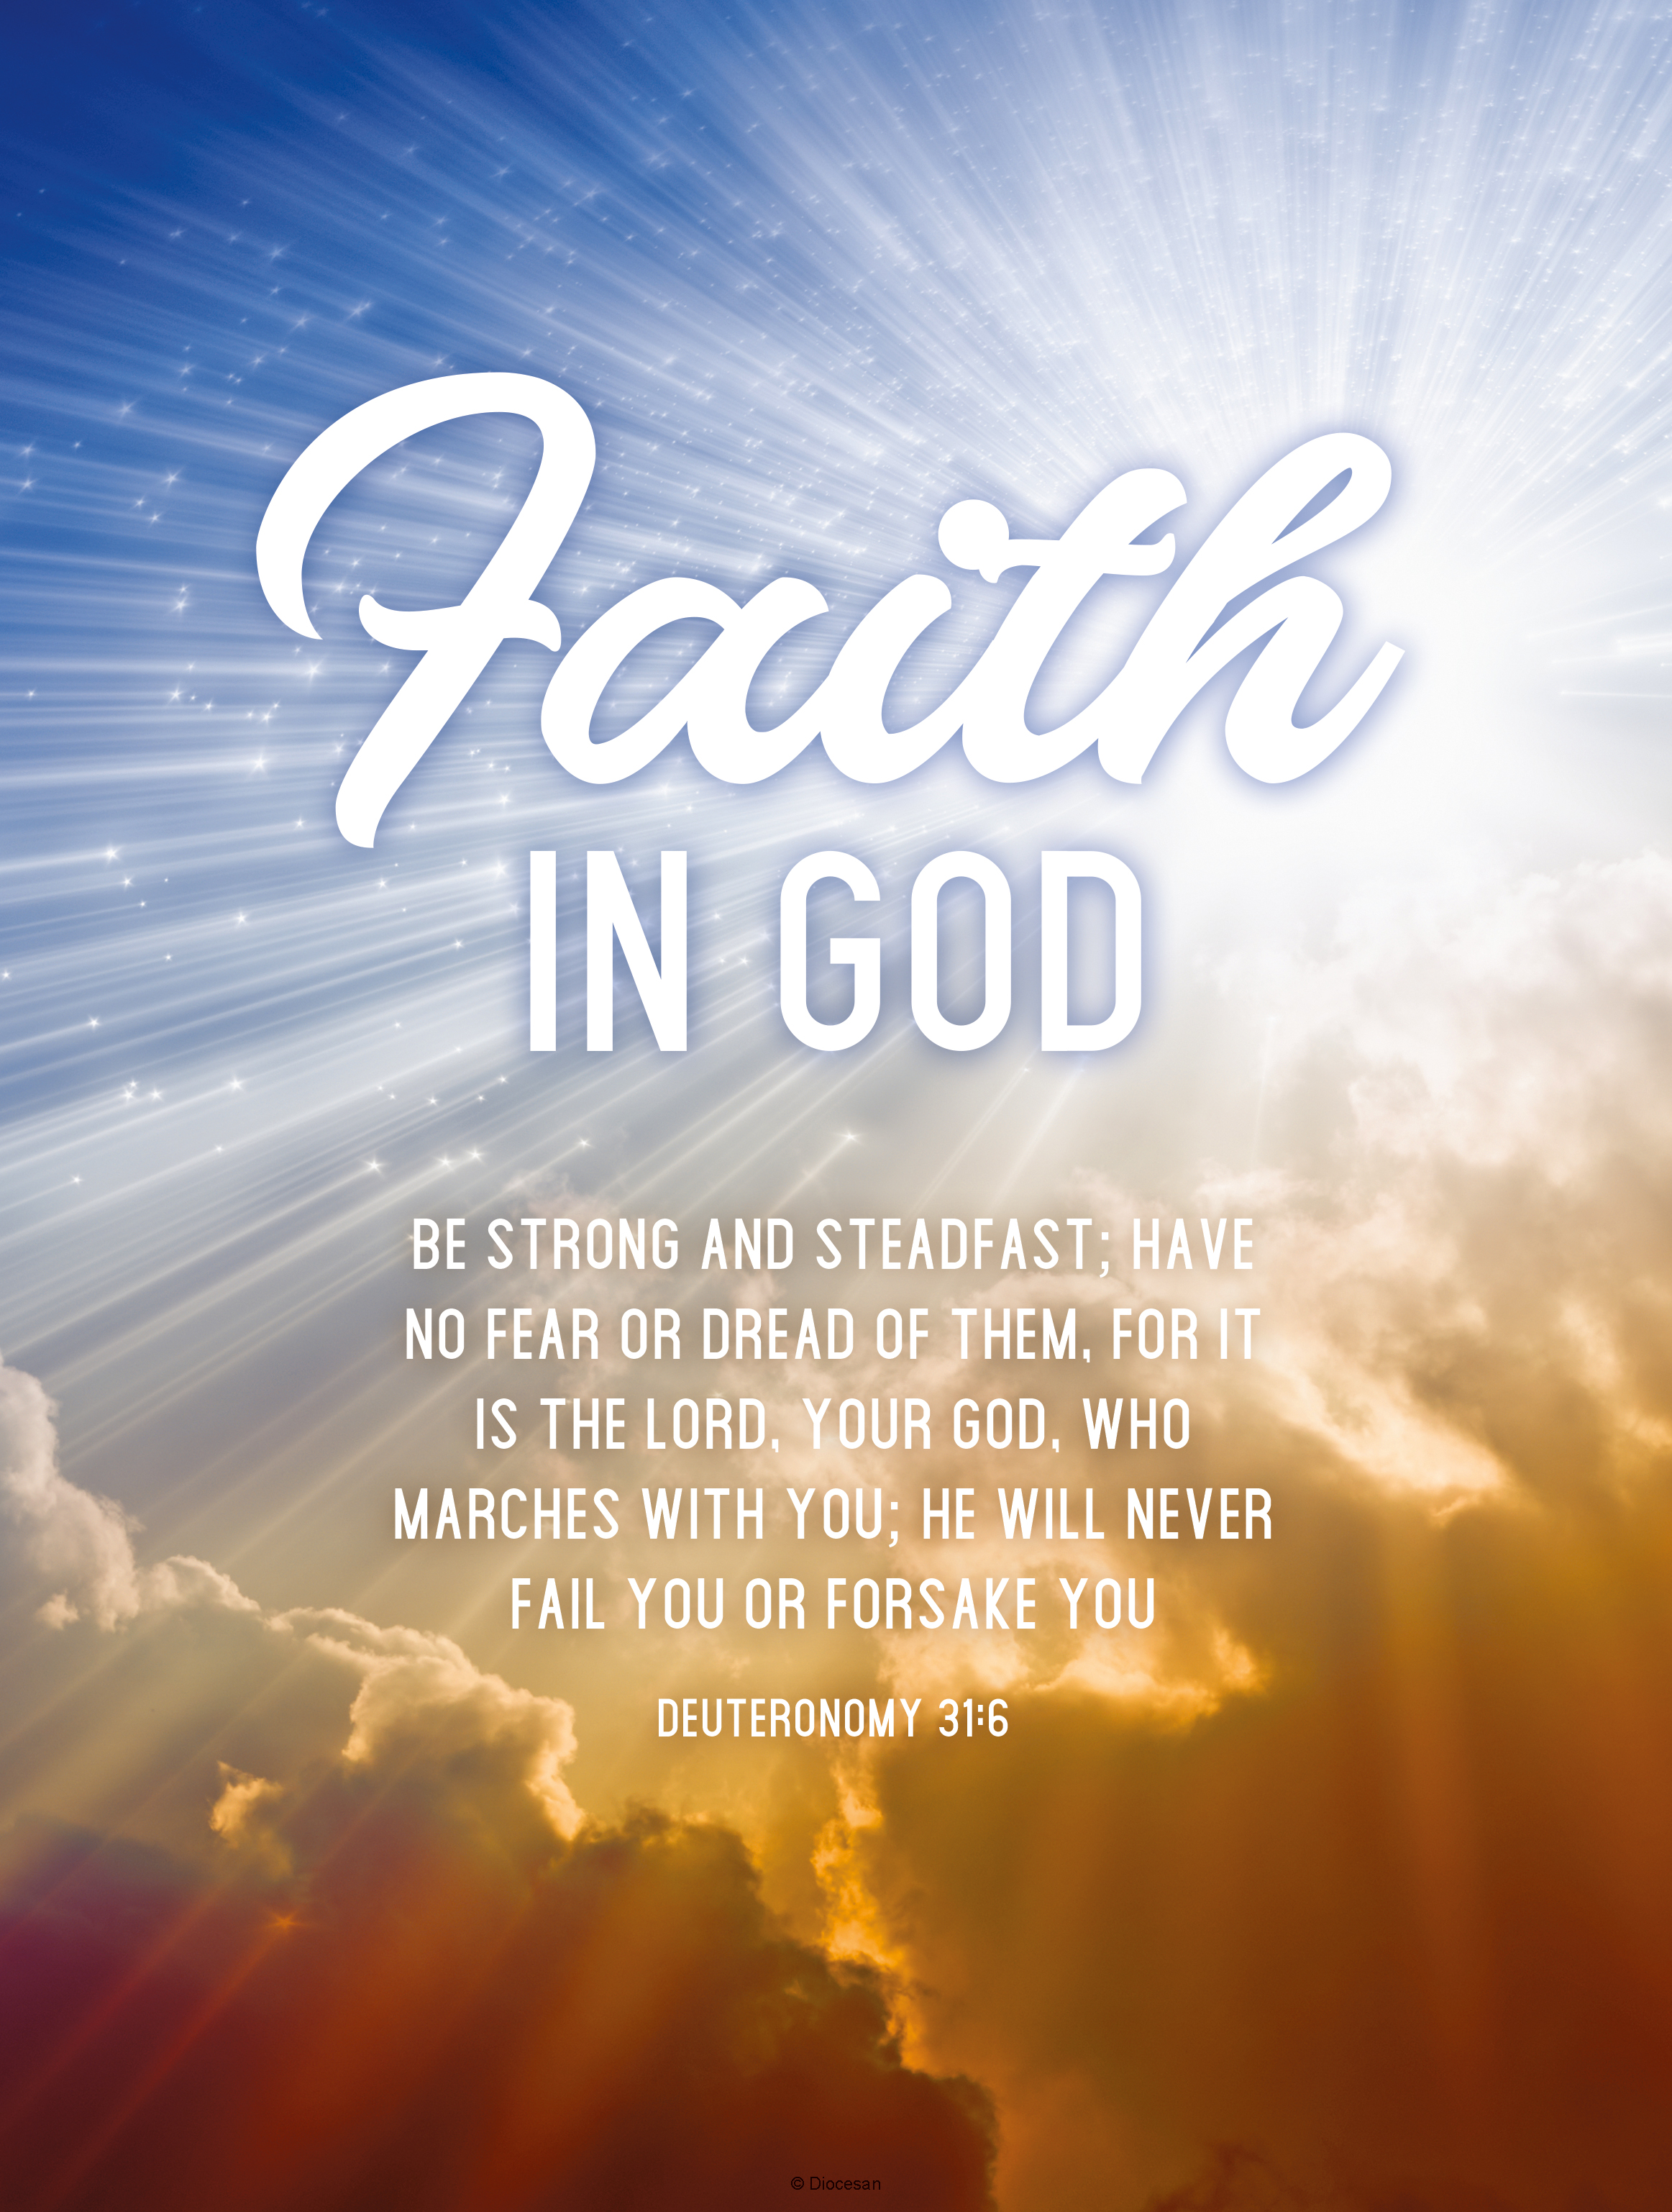 faith in god